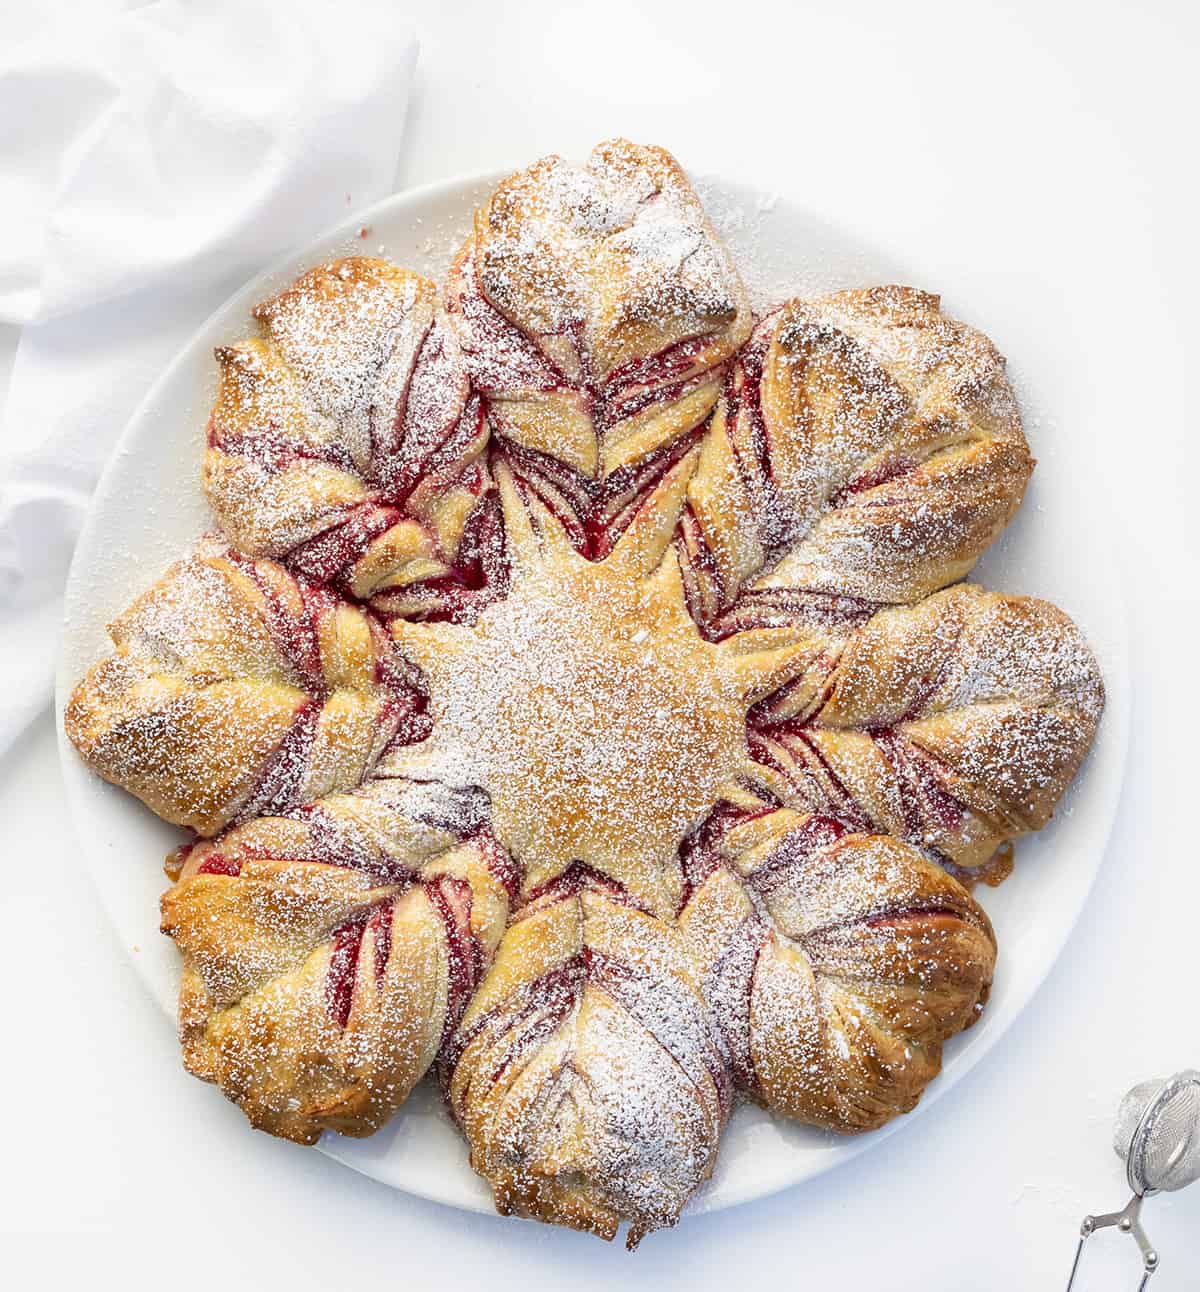 CranberryOrange明星盘片上的白色面包在白色的计数器。甜点,烘焙,假日烘焙,明星面包,圣诞甜点,圣诞面包,面包,感恩节感恩节面包,新年前夕甜点,节日食谱,有趣的配方,我是贝克,iambaker